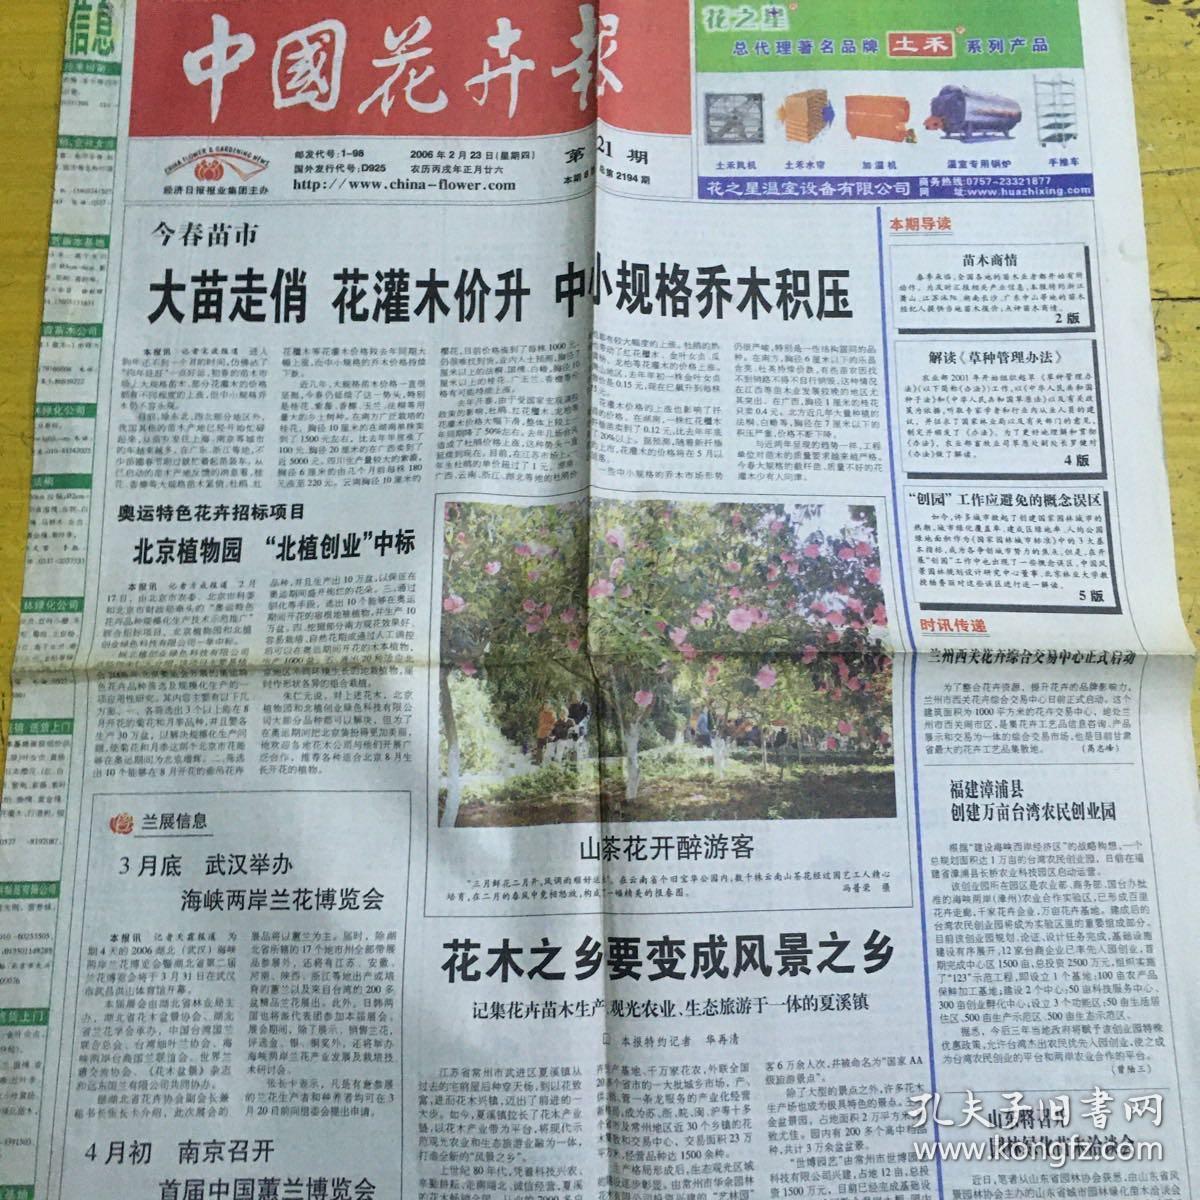 中国花卉报06年2月23日 花木之乡要变成风景之乡 孔夫子旧书网